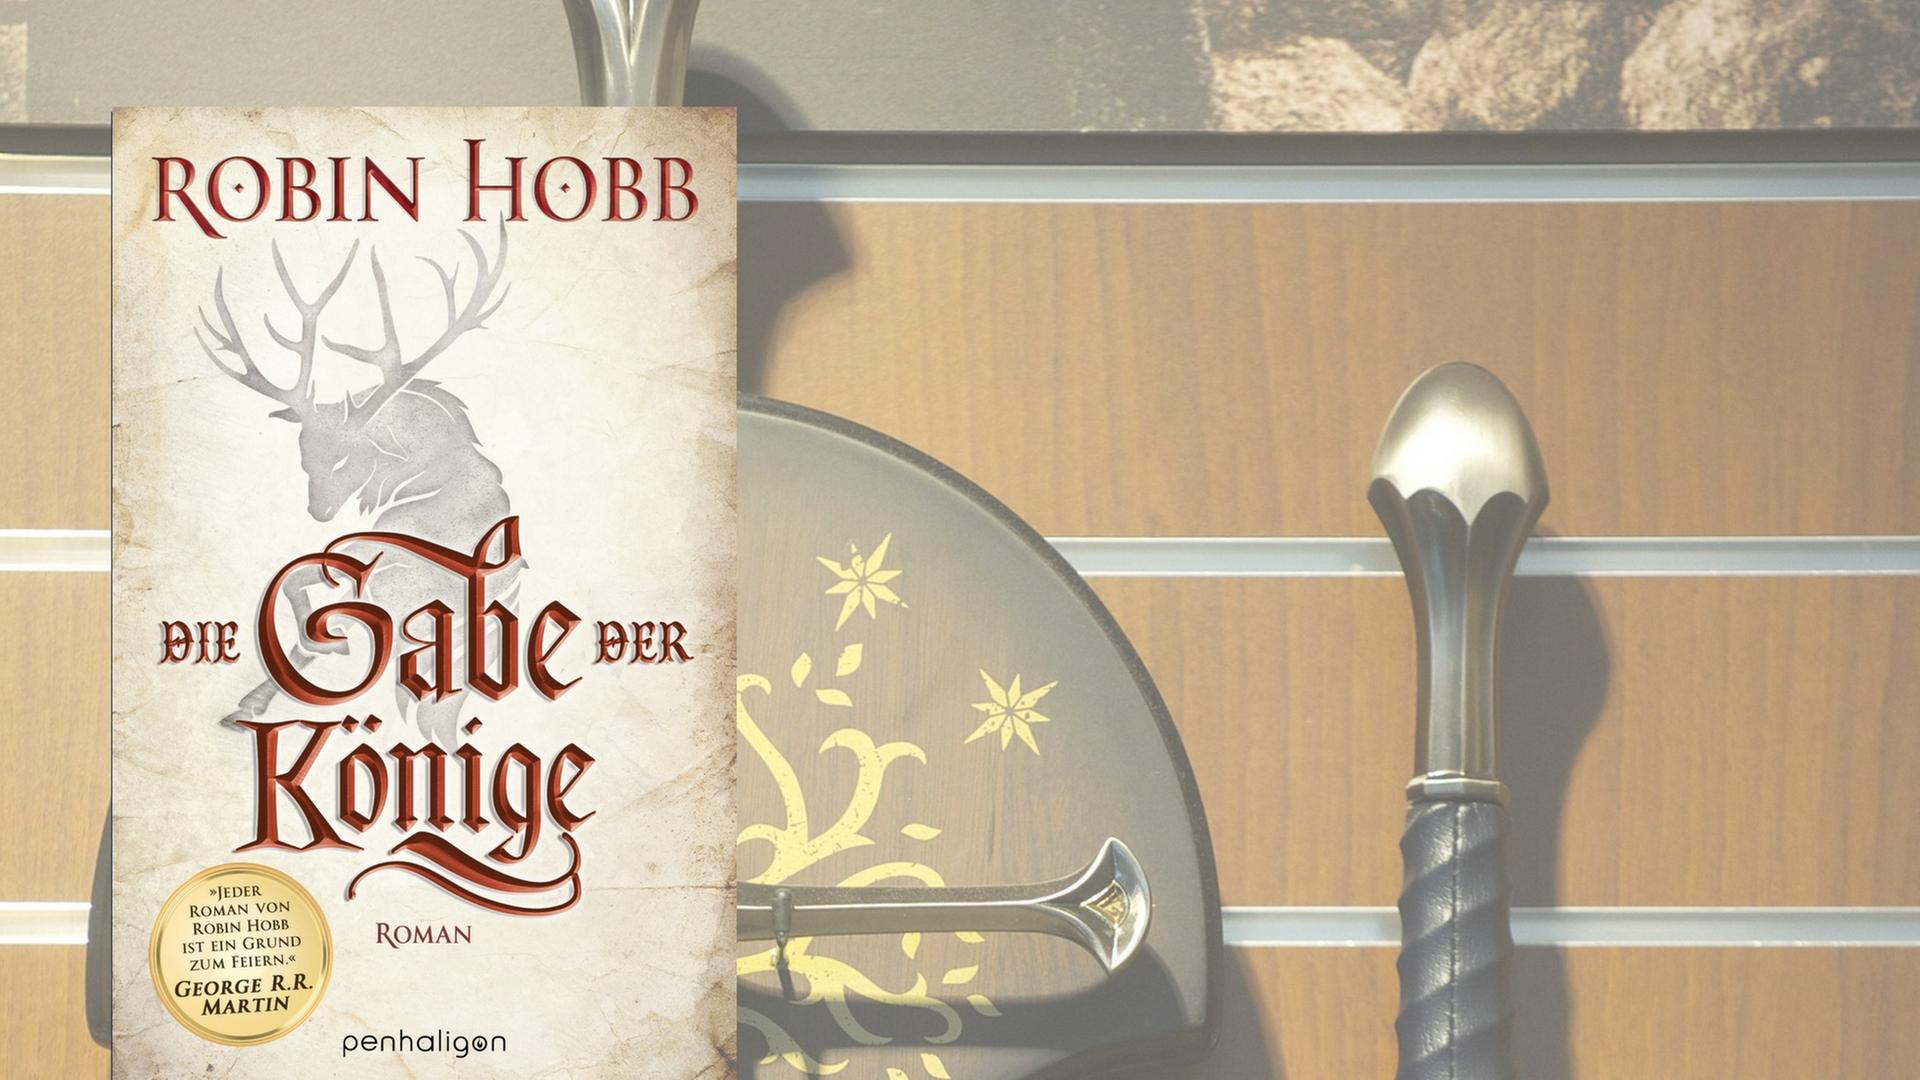 Cover von "Die Gabe der Könige", im Hintergrund: Schwerter in einem Fachgeschäft für Fantasy-Bedarf.